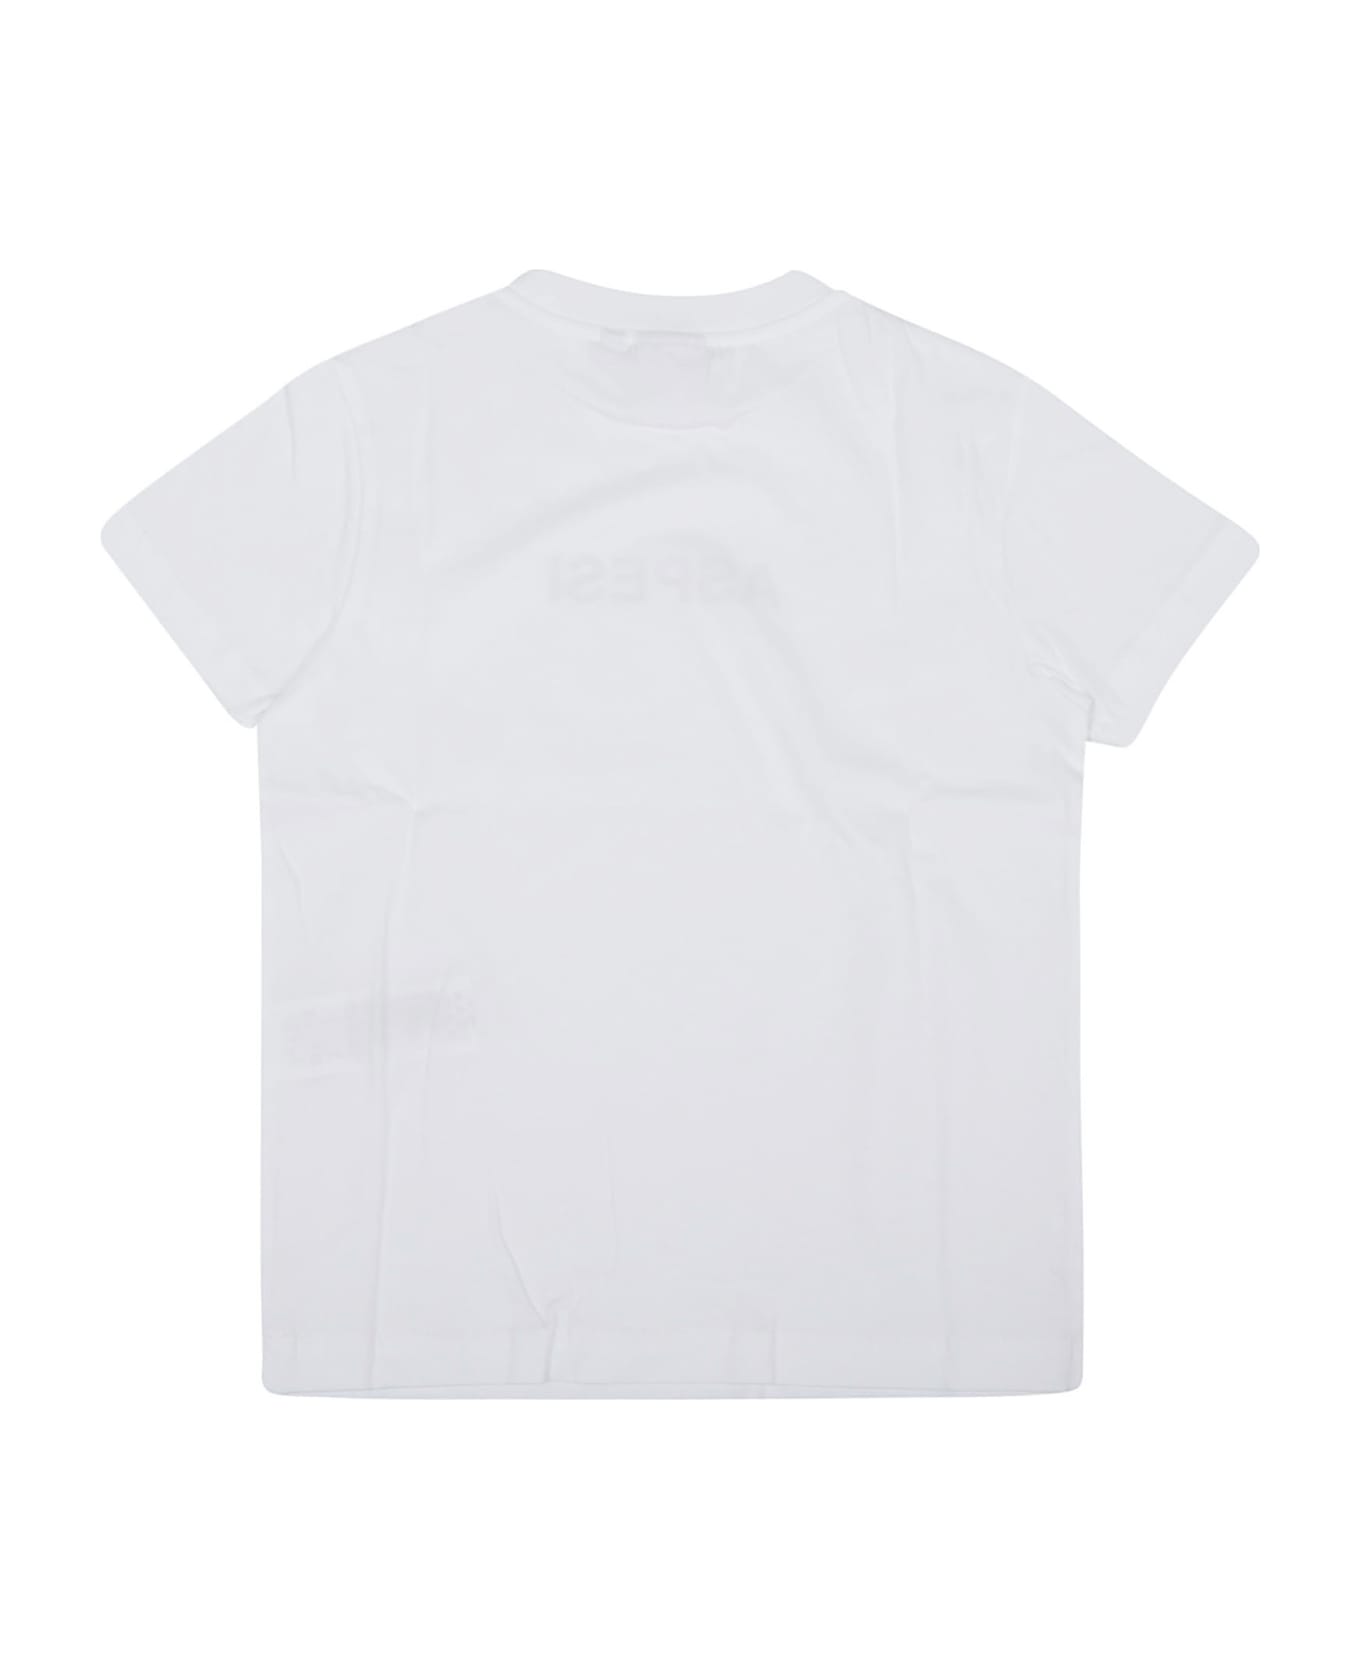 Aspesi T-shirt M/corta - Bianco Nero Tシャツ＆ポロシャツ